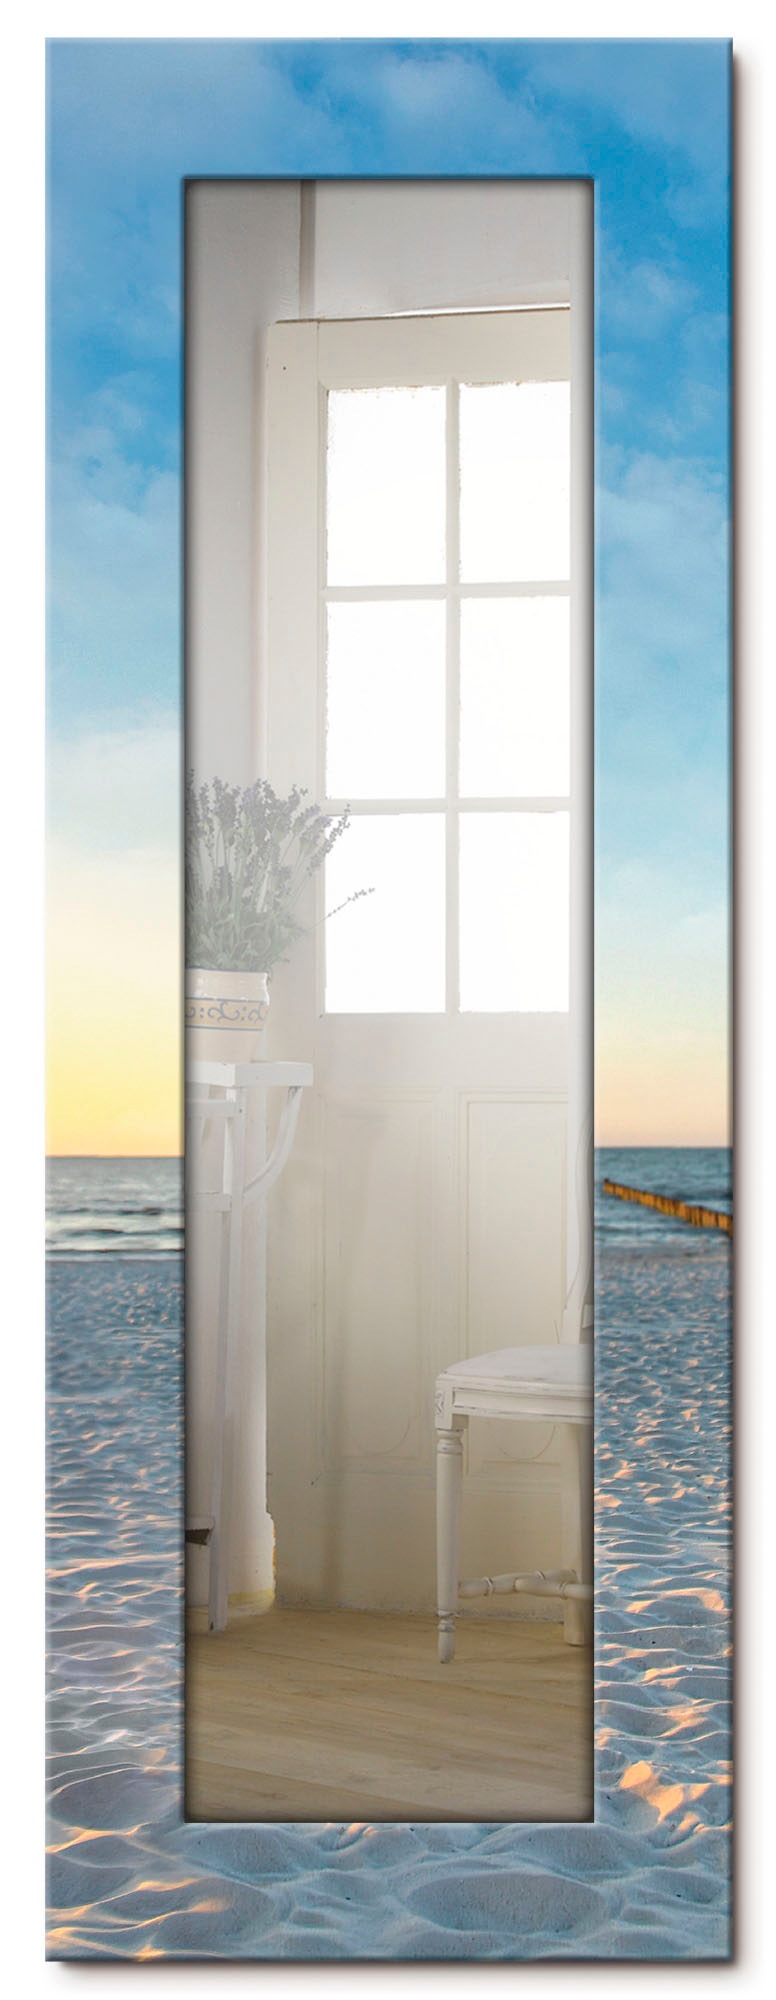 Image of Artland Dekospiegel »Ostsee7 - Strandkorb«, gerahmter Ganzkörperspiegel mit Motivrahmen, geeignet für kleinen, schmalen Flur, Flurspiegel, Mirror Spiegel gerahmt zum Aufhängen bei Ackermann Versand Schweiz